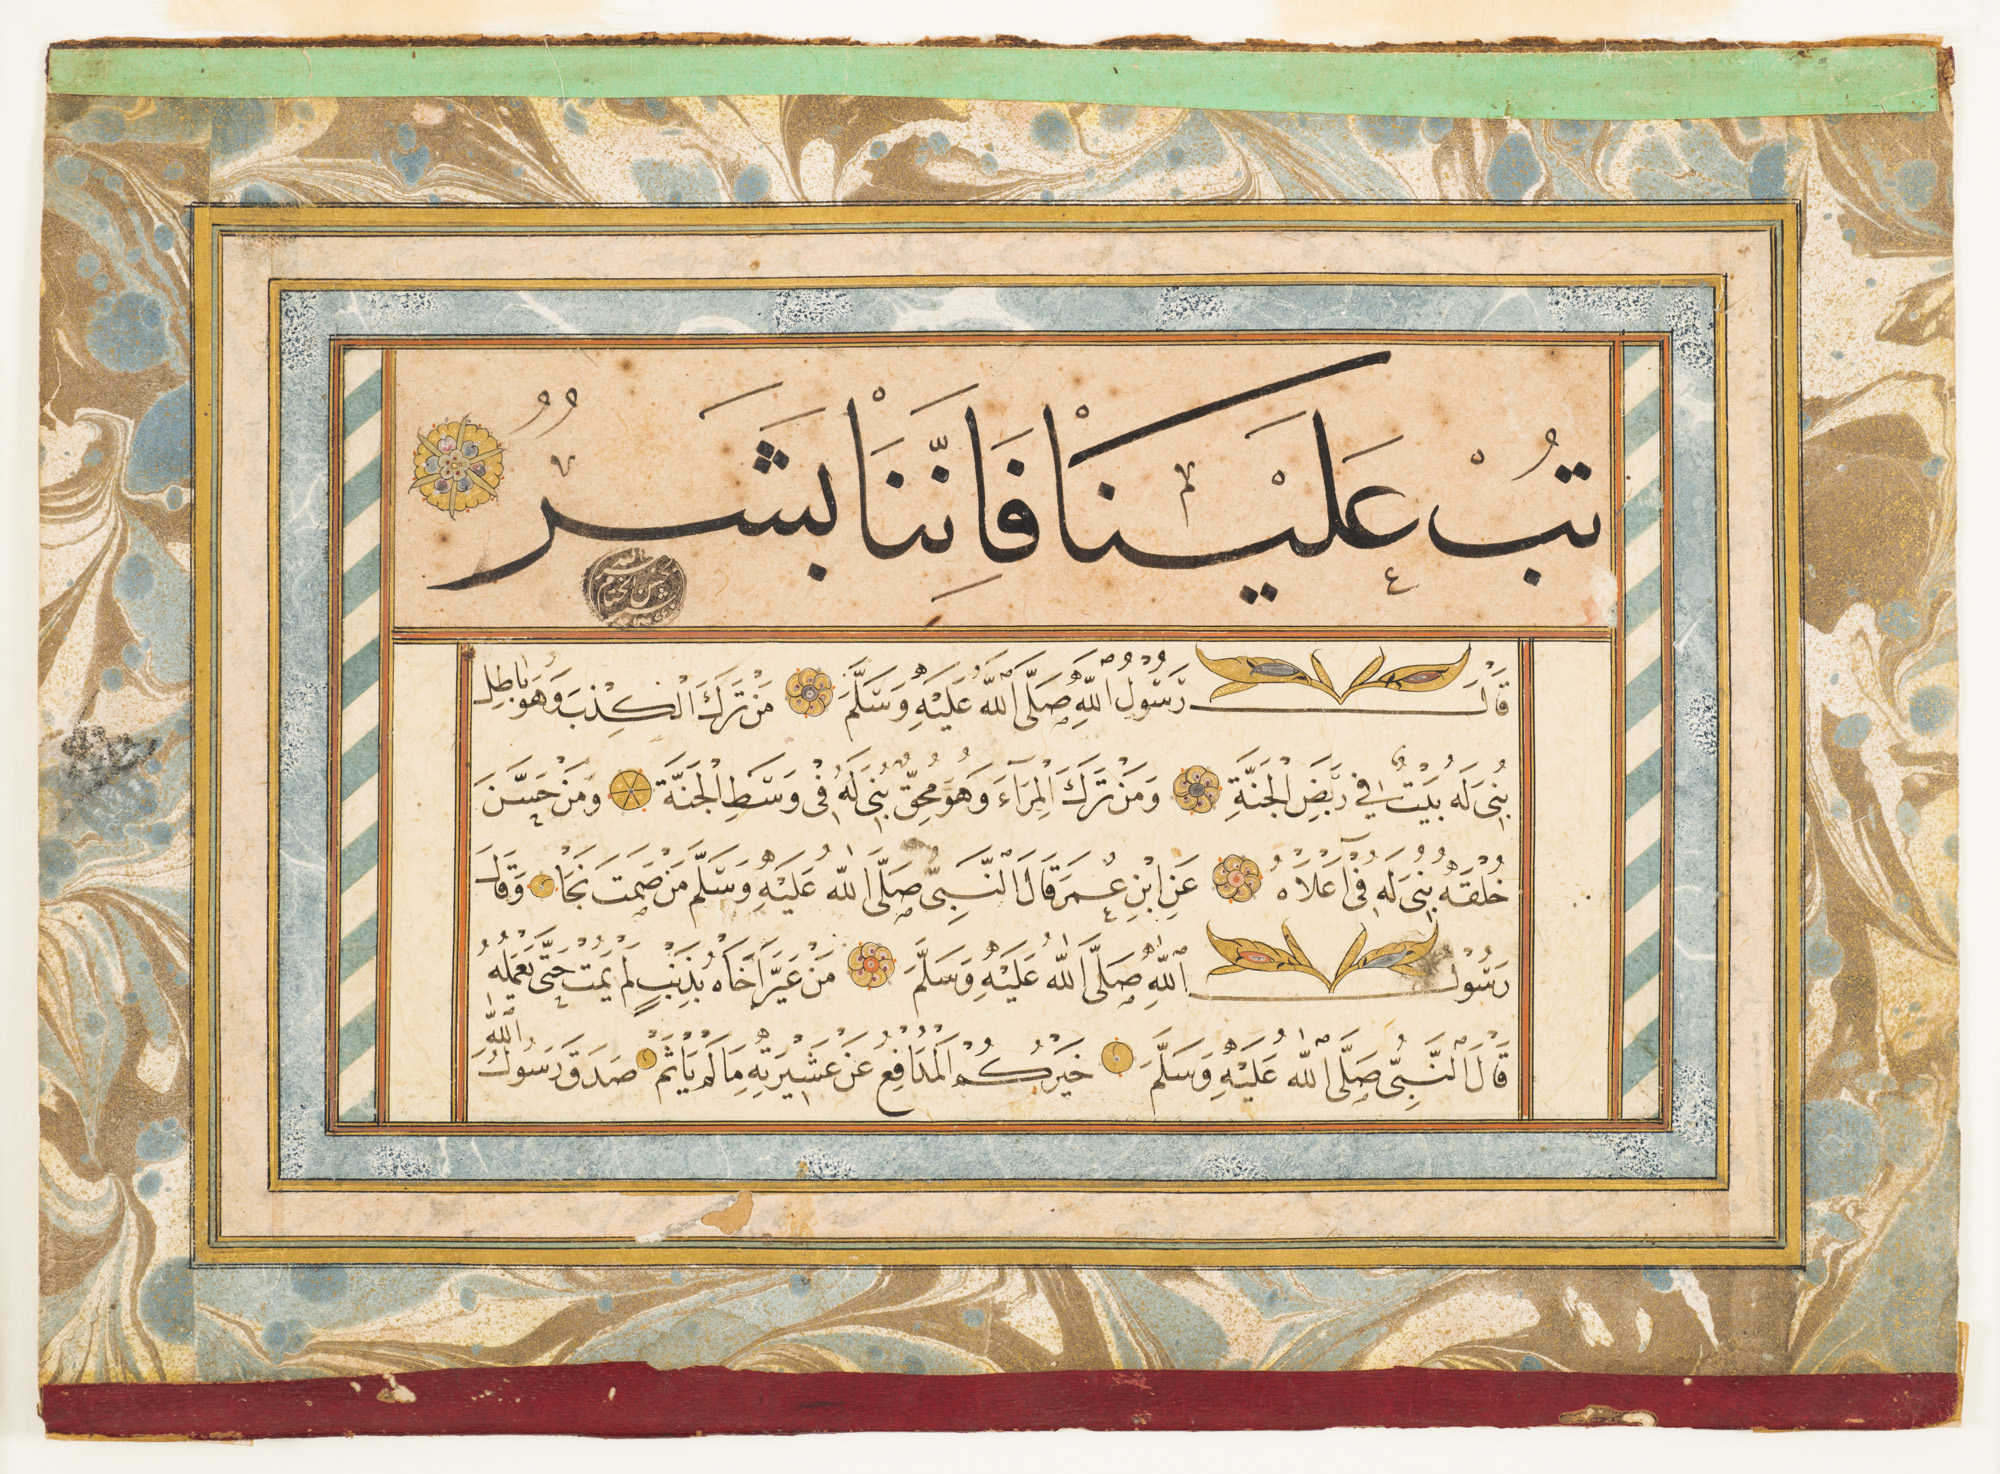 Uma Compilação de Caligrafia das Palavras de Ações do Profeta Muhammad (Hádice) by Artista Desconhecido - 18th century 